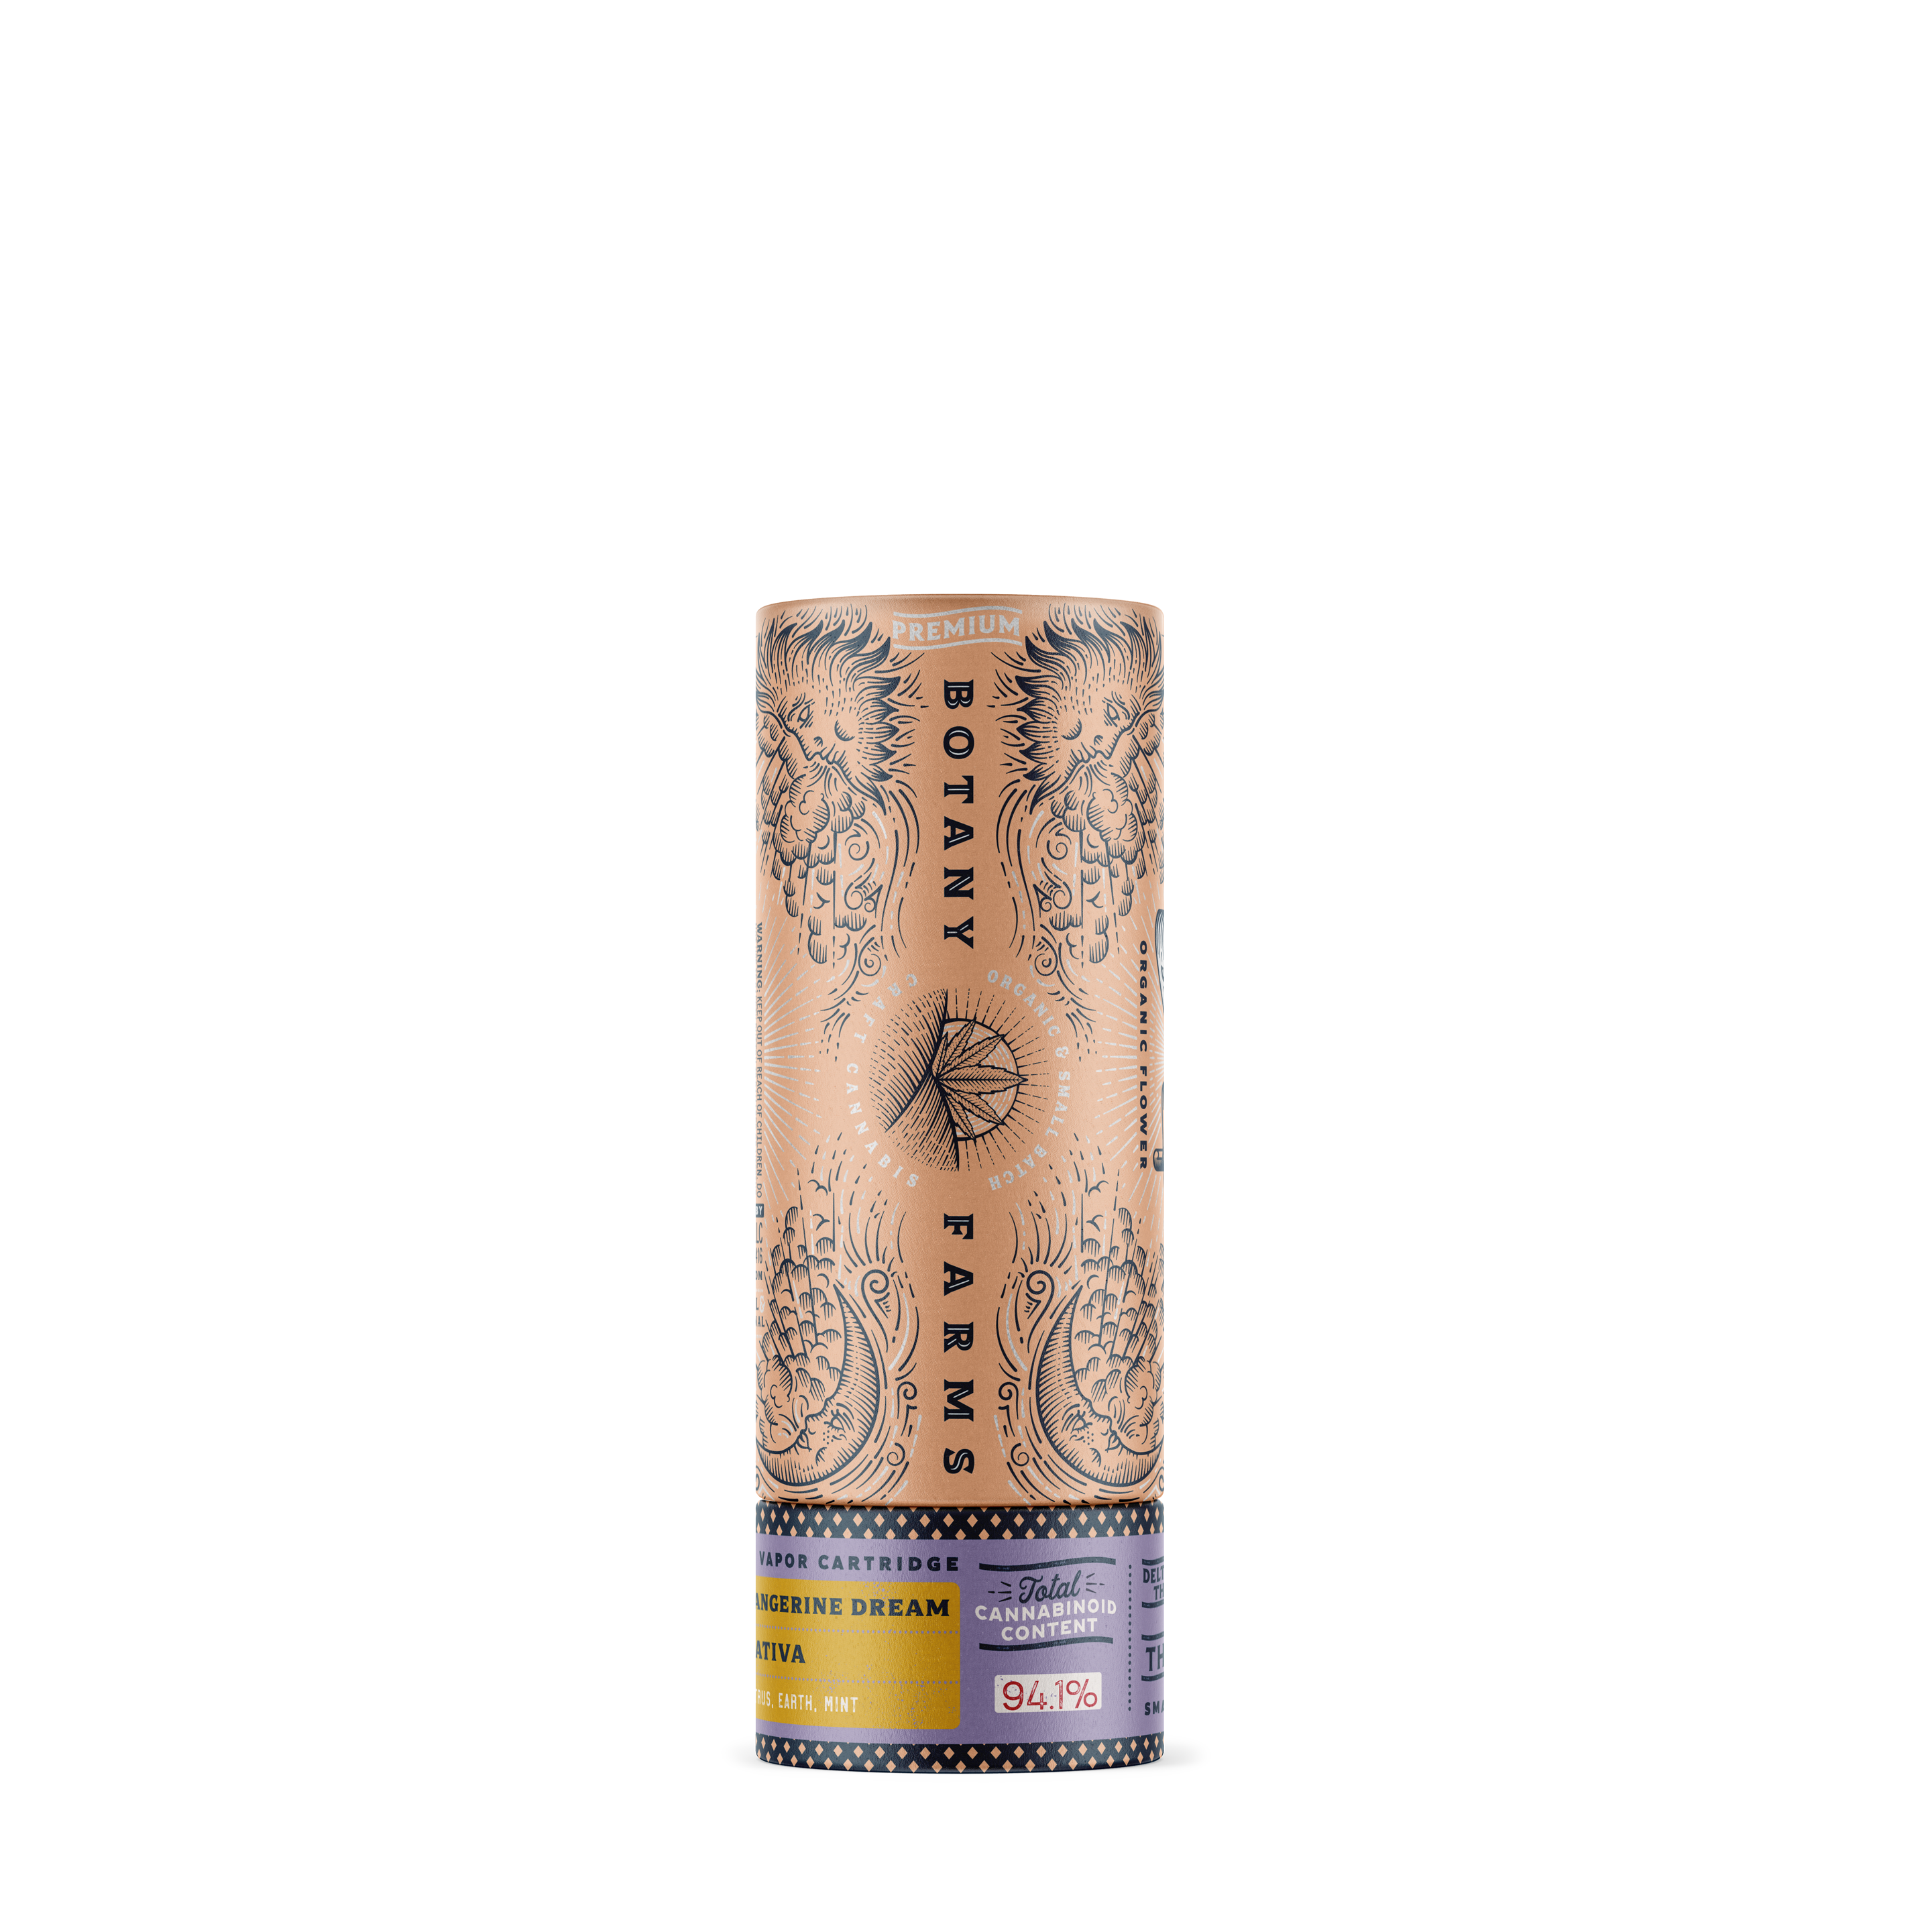 Delta-8 THC Vape Cartridge: Tangerine Dream Sativa from Botany Farms